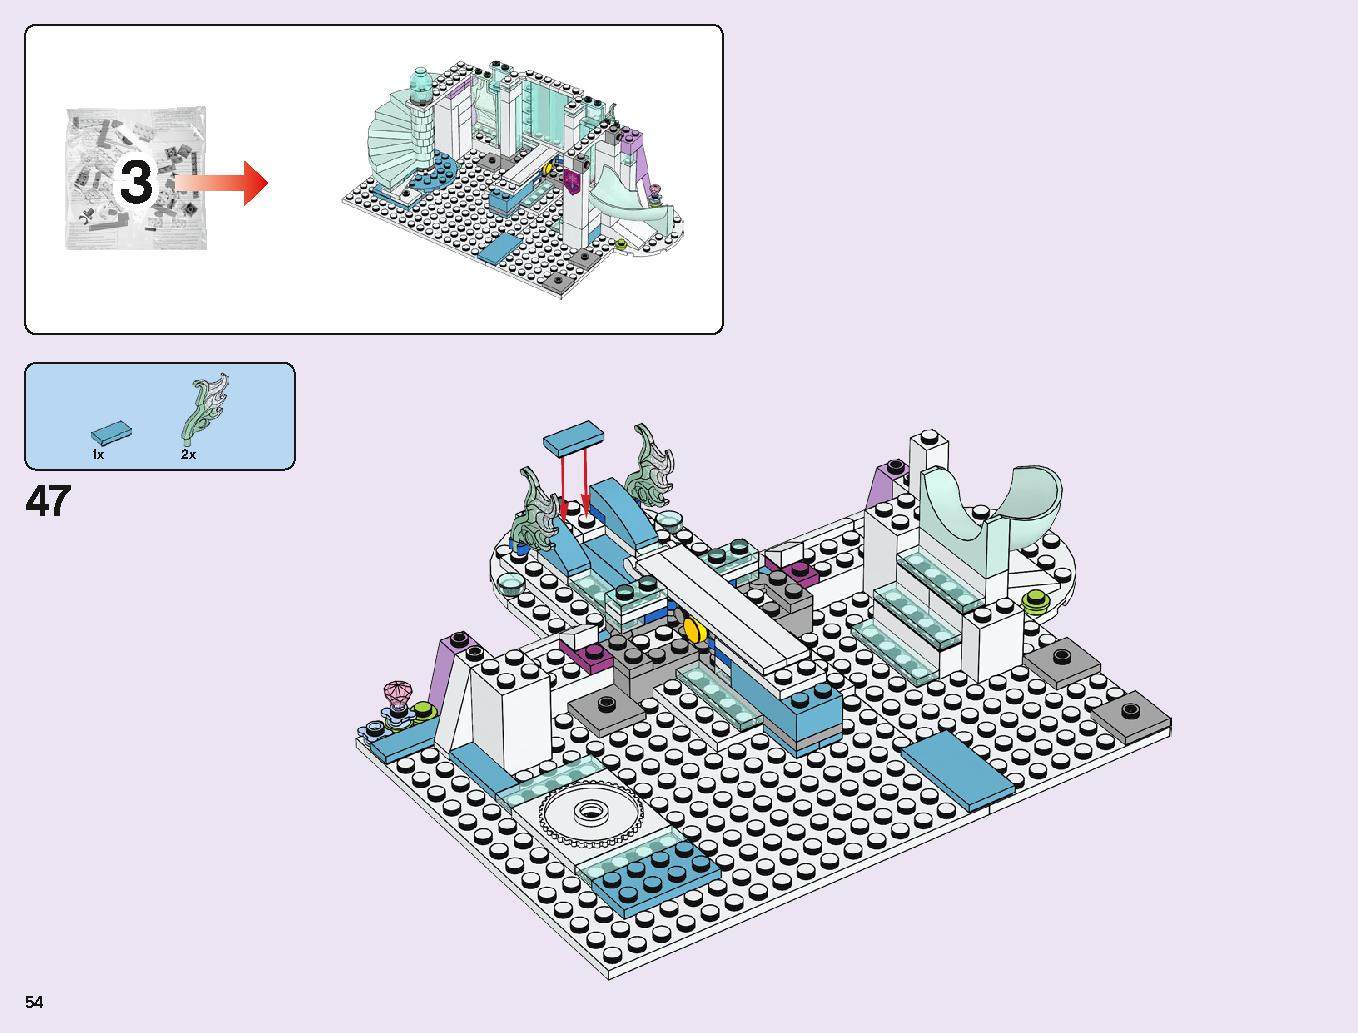 アナと雪の女王 “アイスキャッスル・ファンタジー” 43172 レゴの商品情報 レゴの説明書・組立方法 54 page